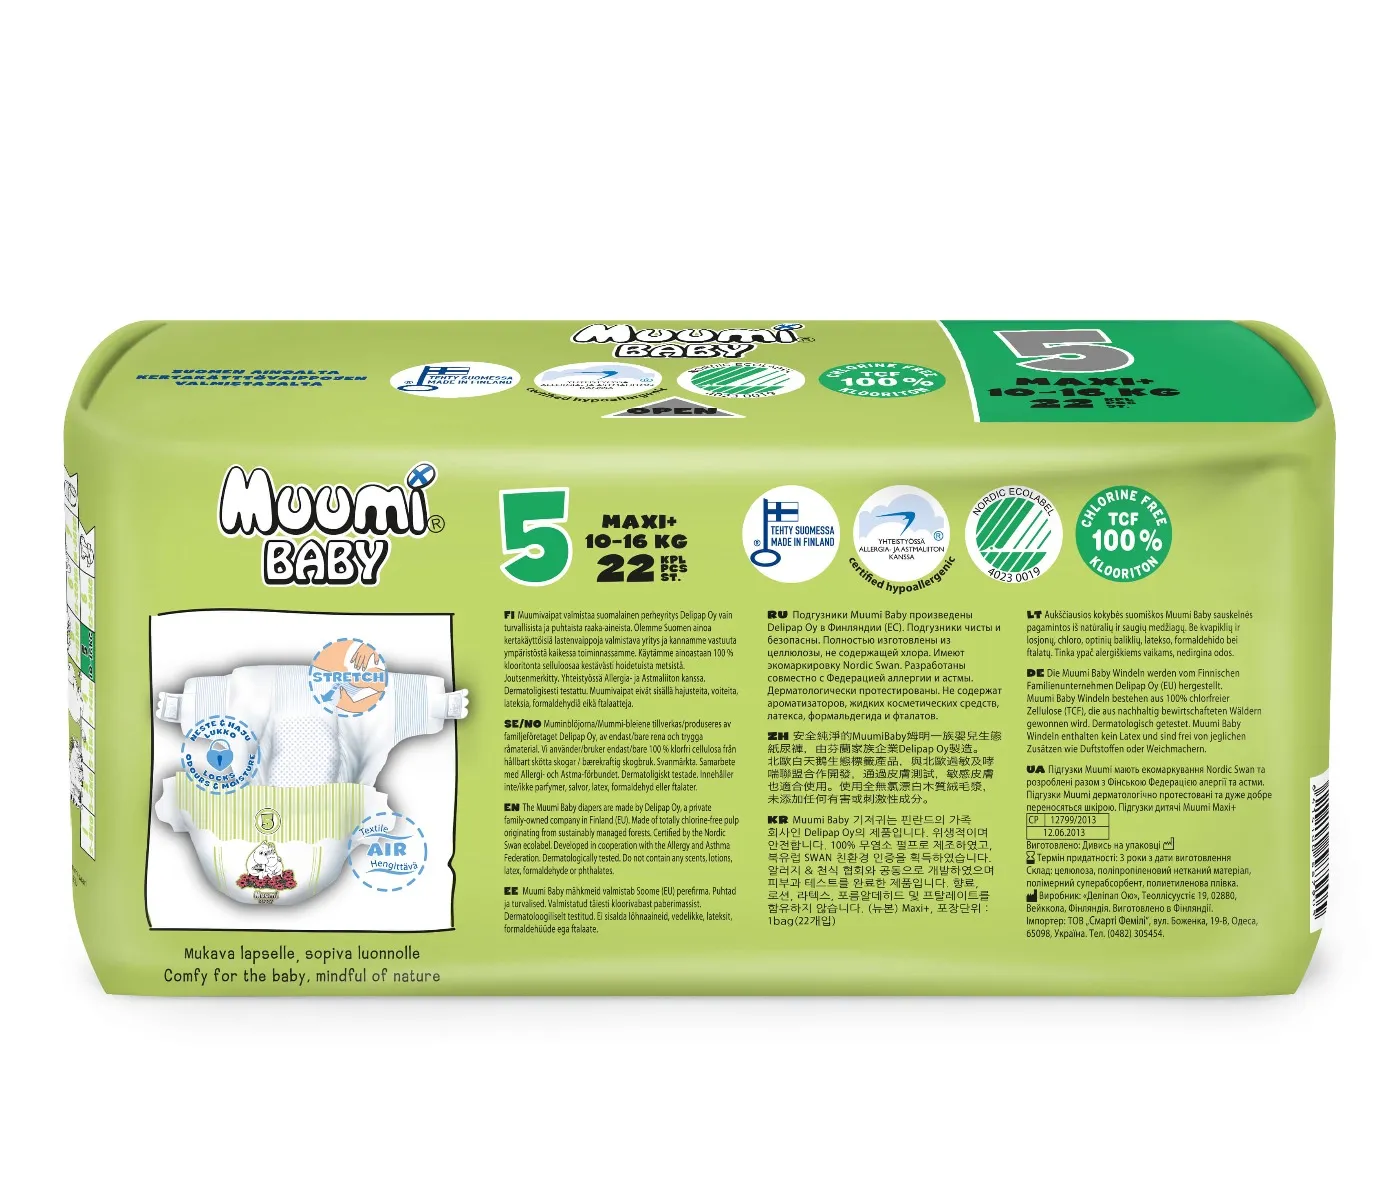 Muumi Baby 5+ MAXI, Pieluszki Ekologiczne 10-16 KG, 22 szt. 